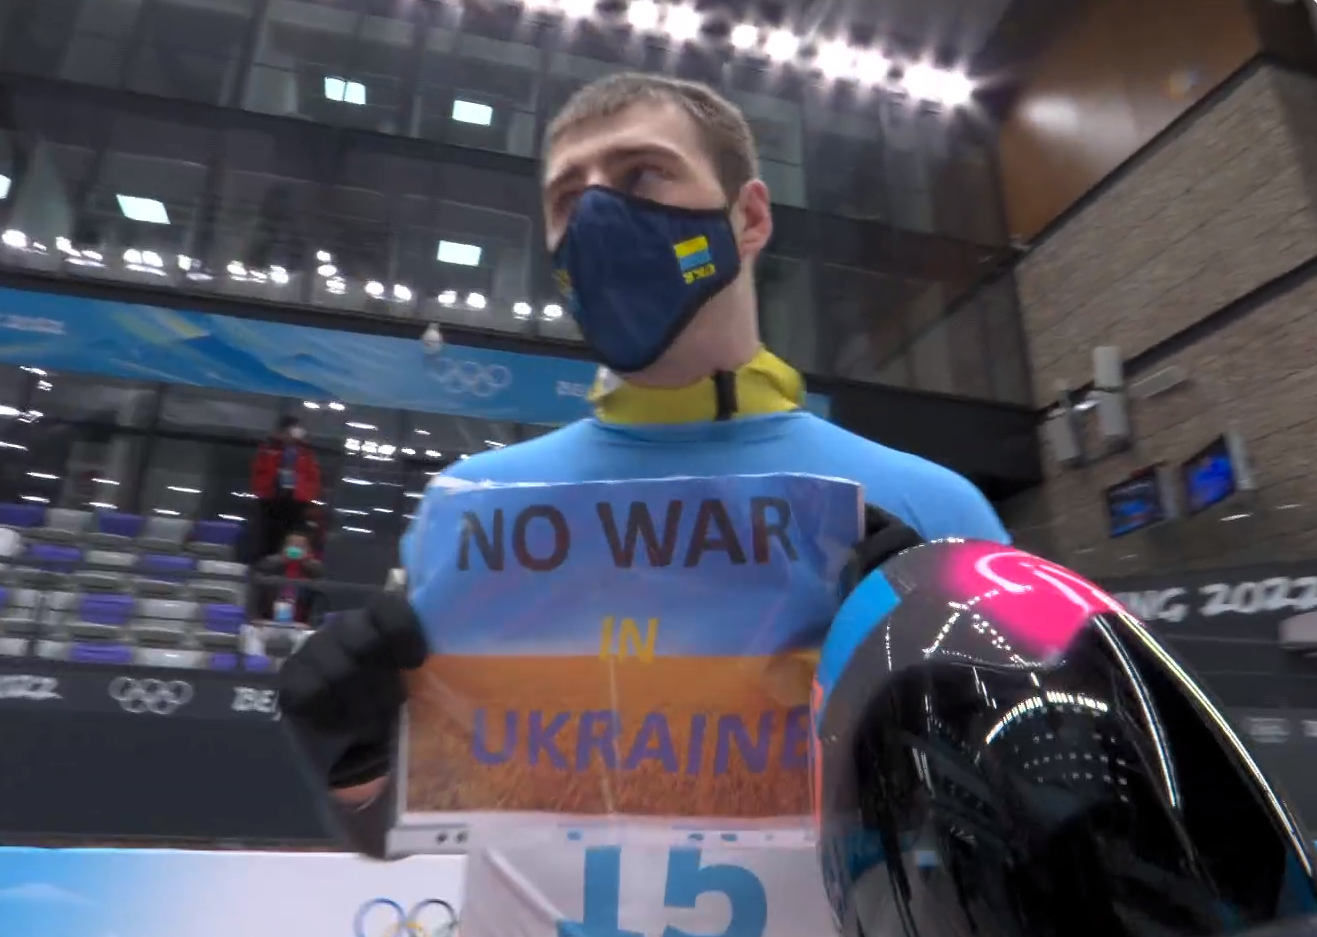 Ukrainian slider Vladyslav Heraskevych has called for "No War in Ukraine" ©IOC